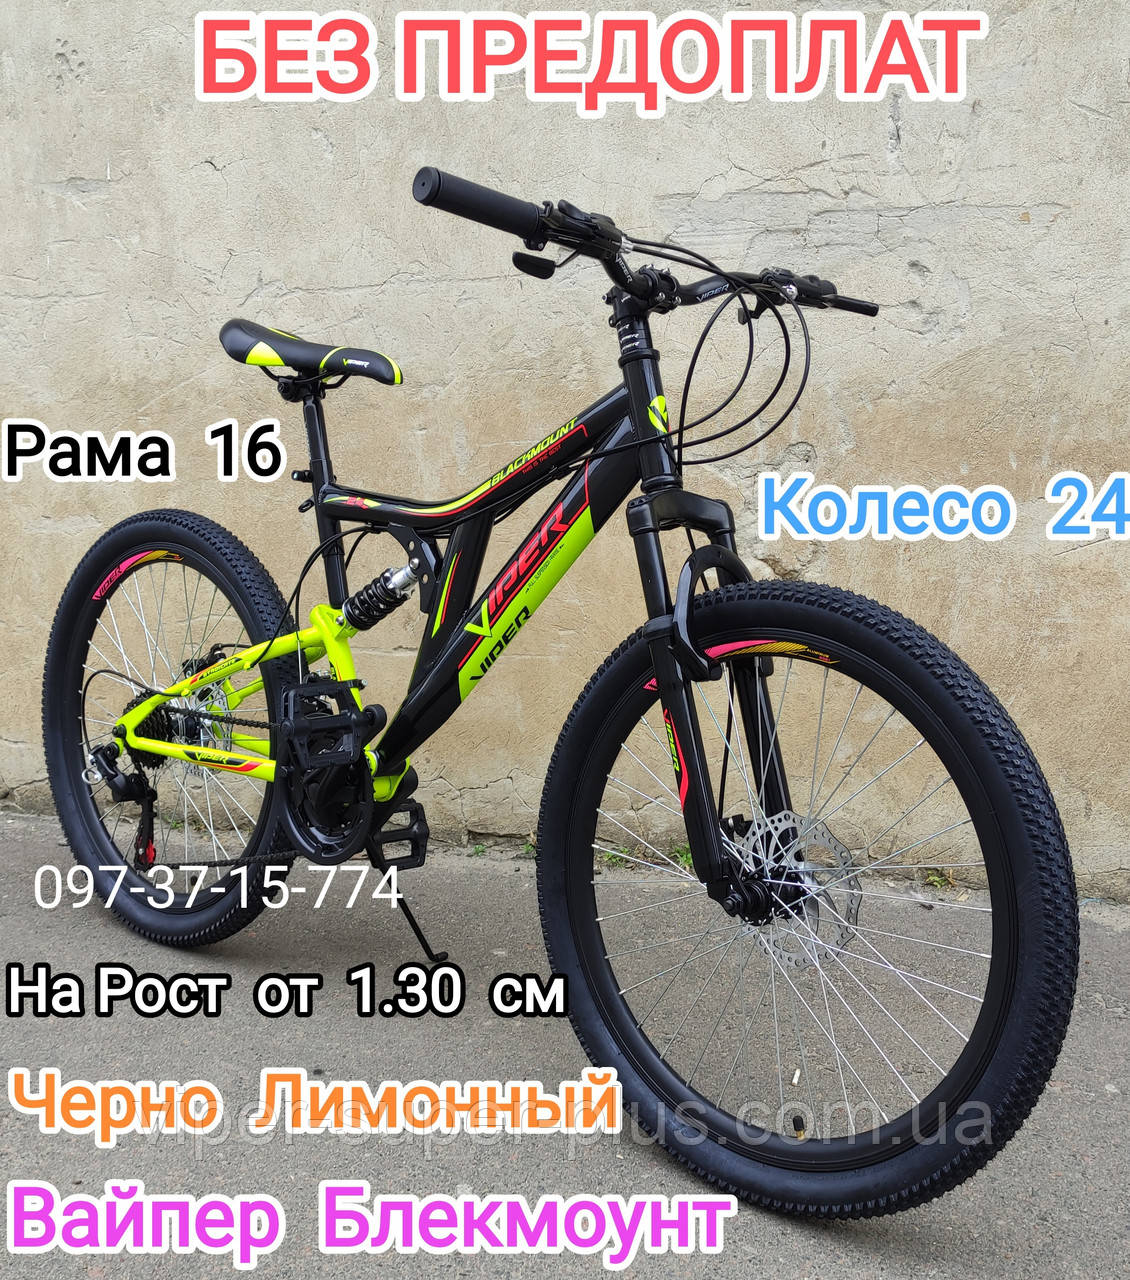 ✅ Гірський підлітковий велосипед Вайпер Блекмоунт, 24 Колесо, Рама 16, Чорно Лімонний Viper Blackmount